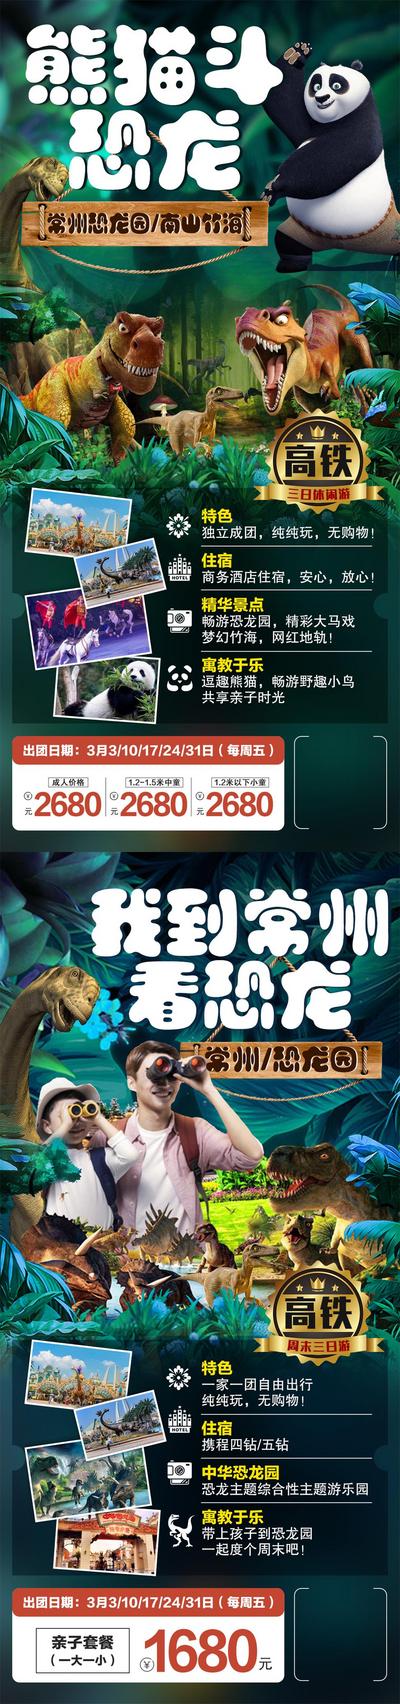 南门网 广告 海报 旅游 恐龙 常州 中华恐龙园 亲子游 周末游 熊猫 动物 系列